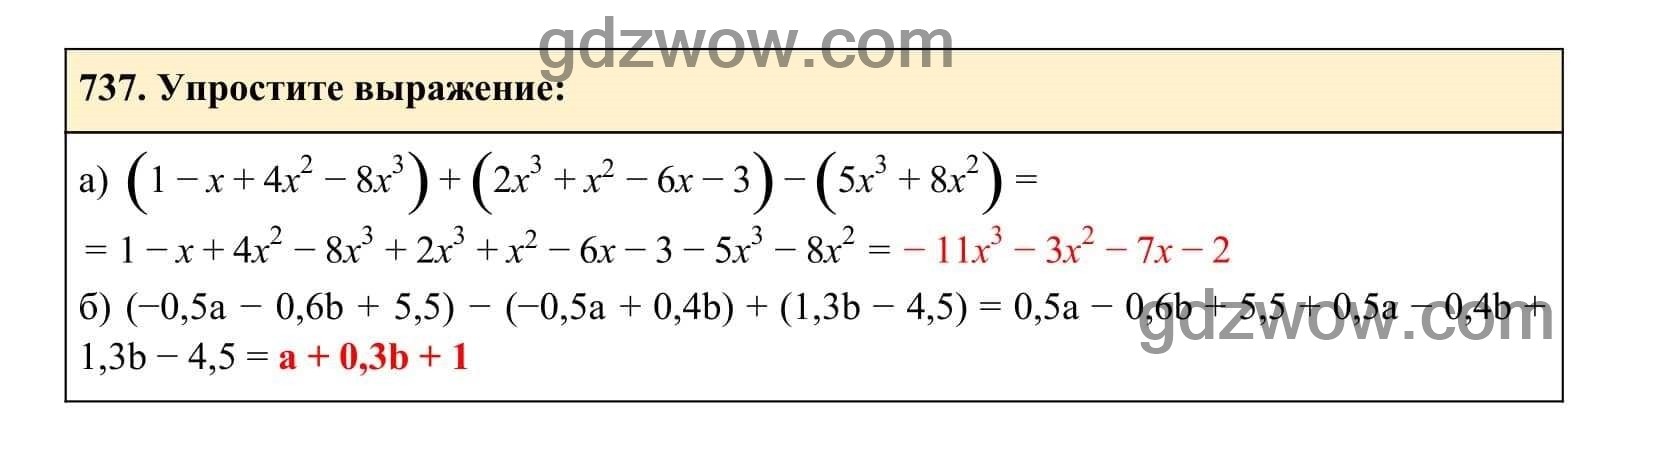 Упражнение 737 - ГДЗ по Алгебре 7 класс Учебник Макарычев (решебник) - GDZwow